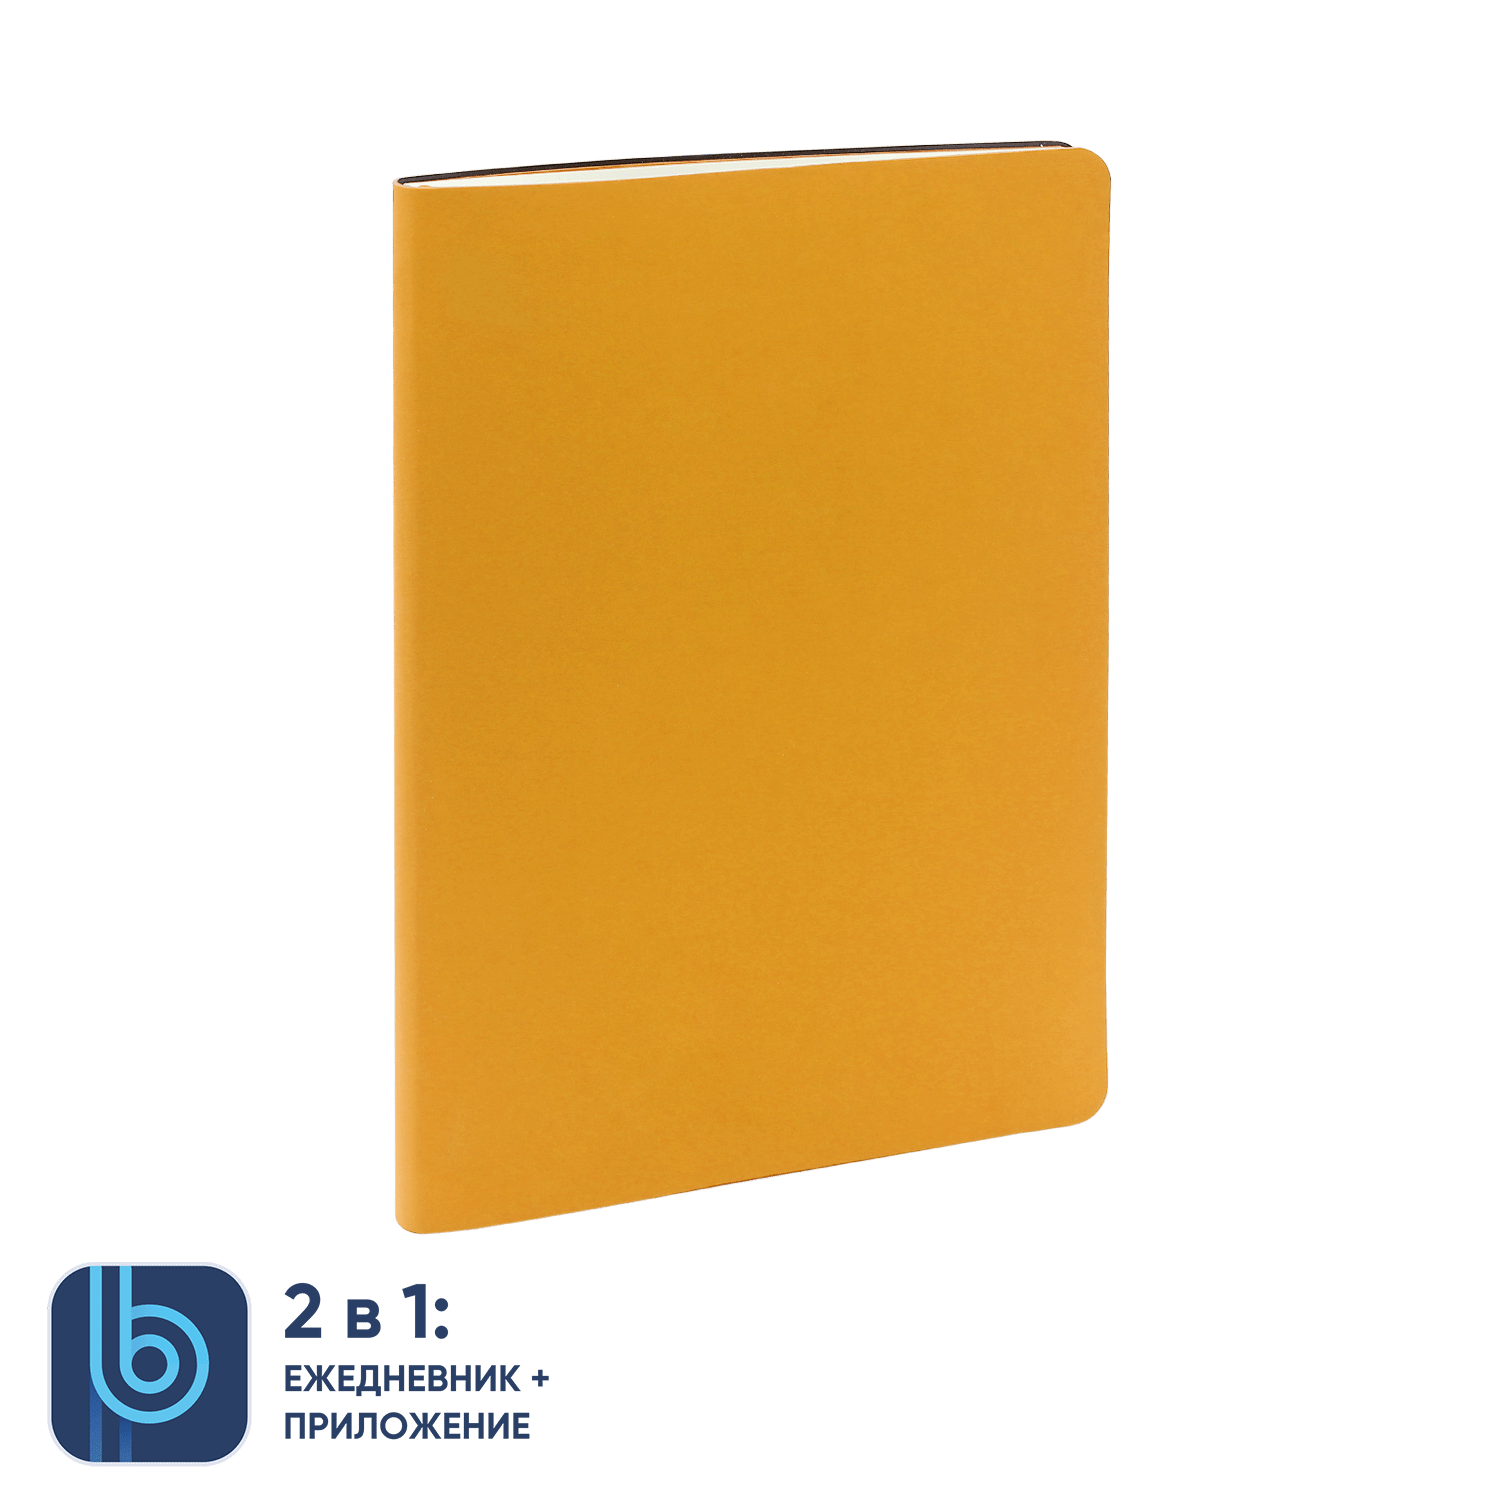 Ежедневник Bplanner.01 yellow (желтый)